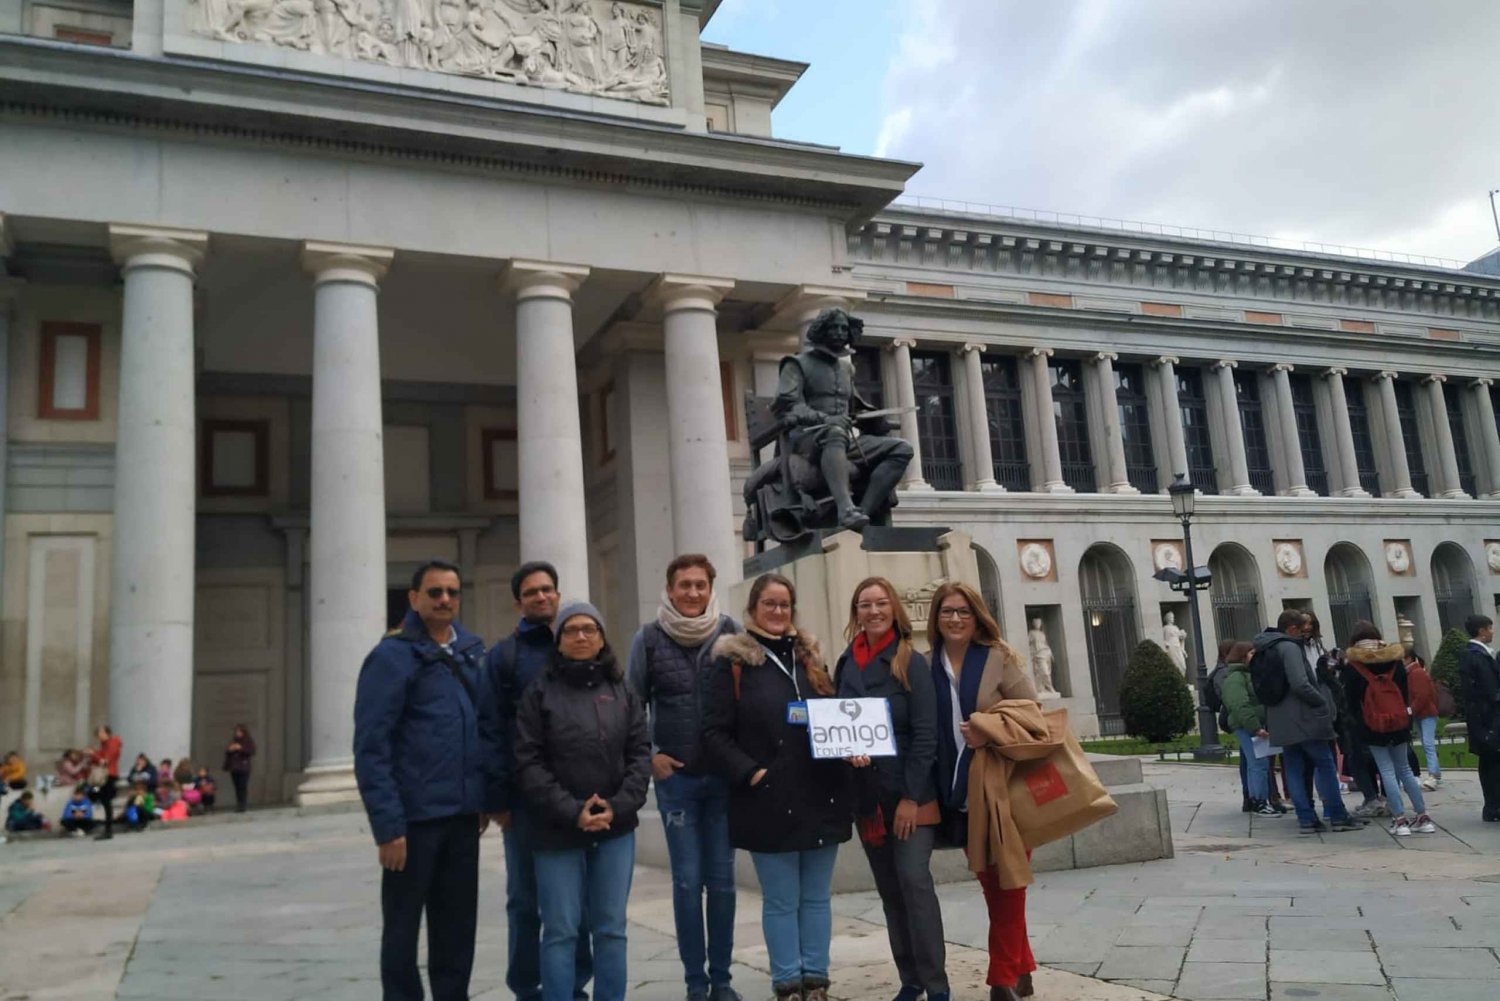 Madryt: Wycieczka z przewodnikiem po Muzeum Prado